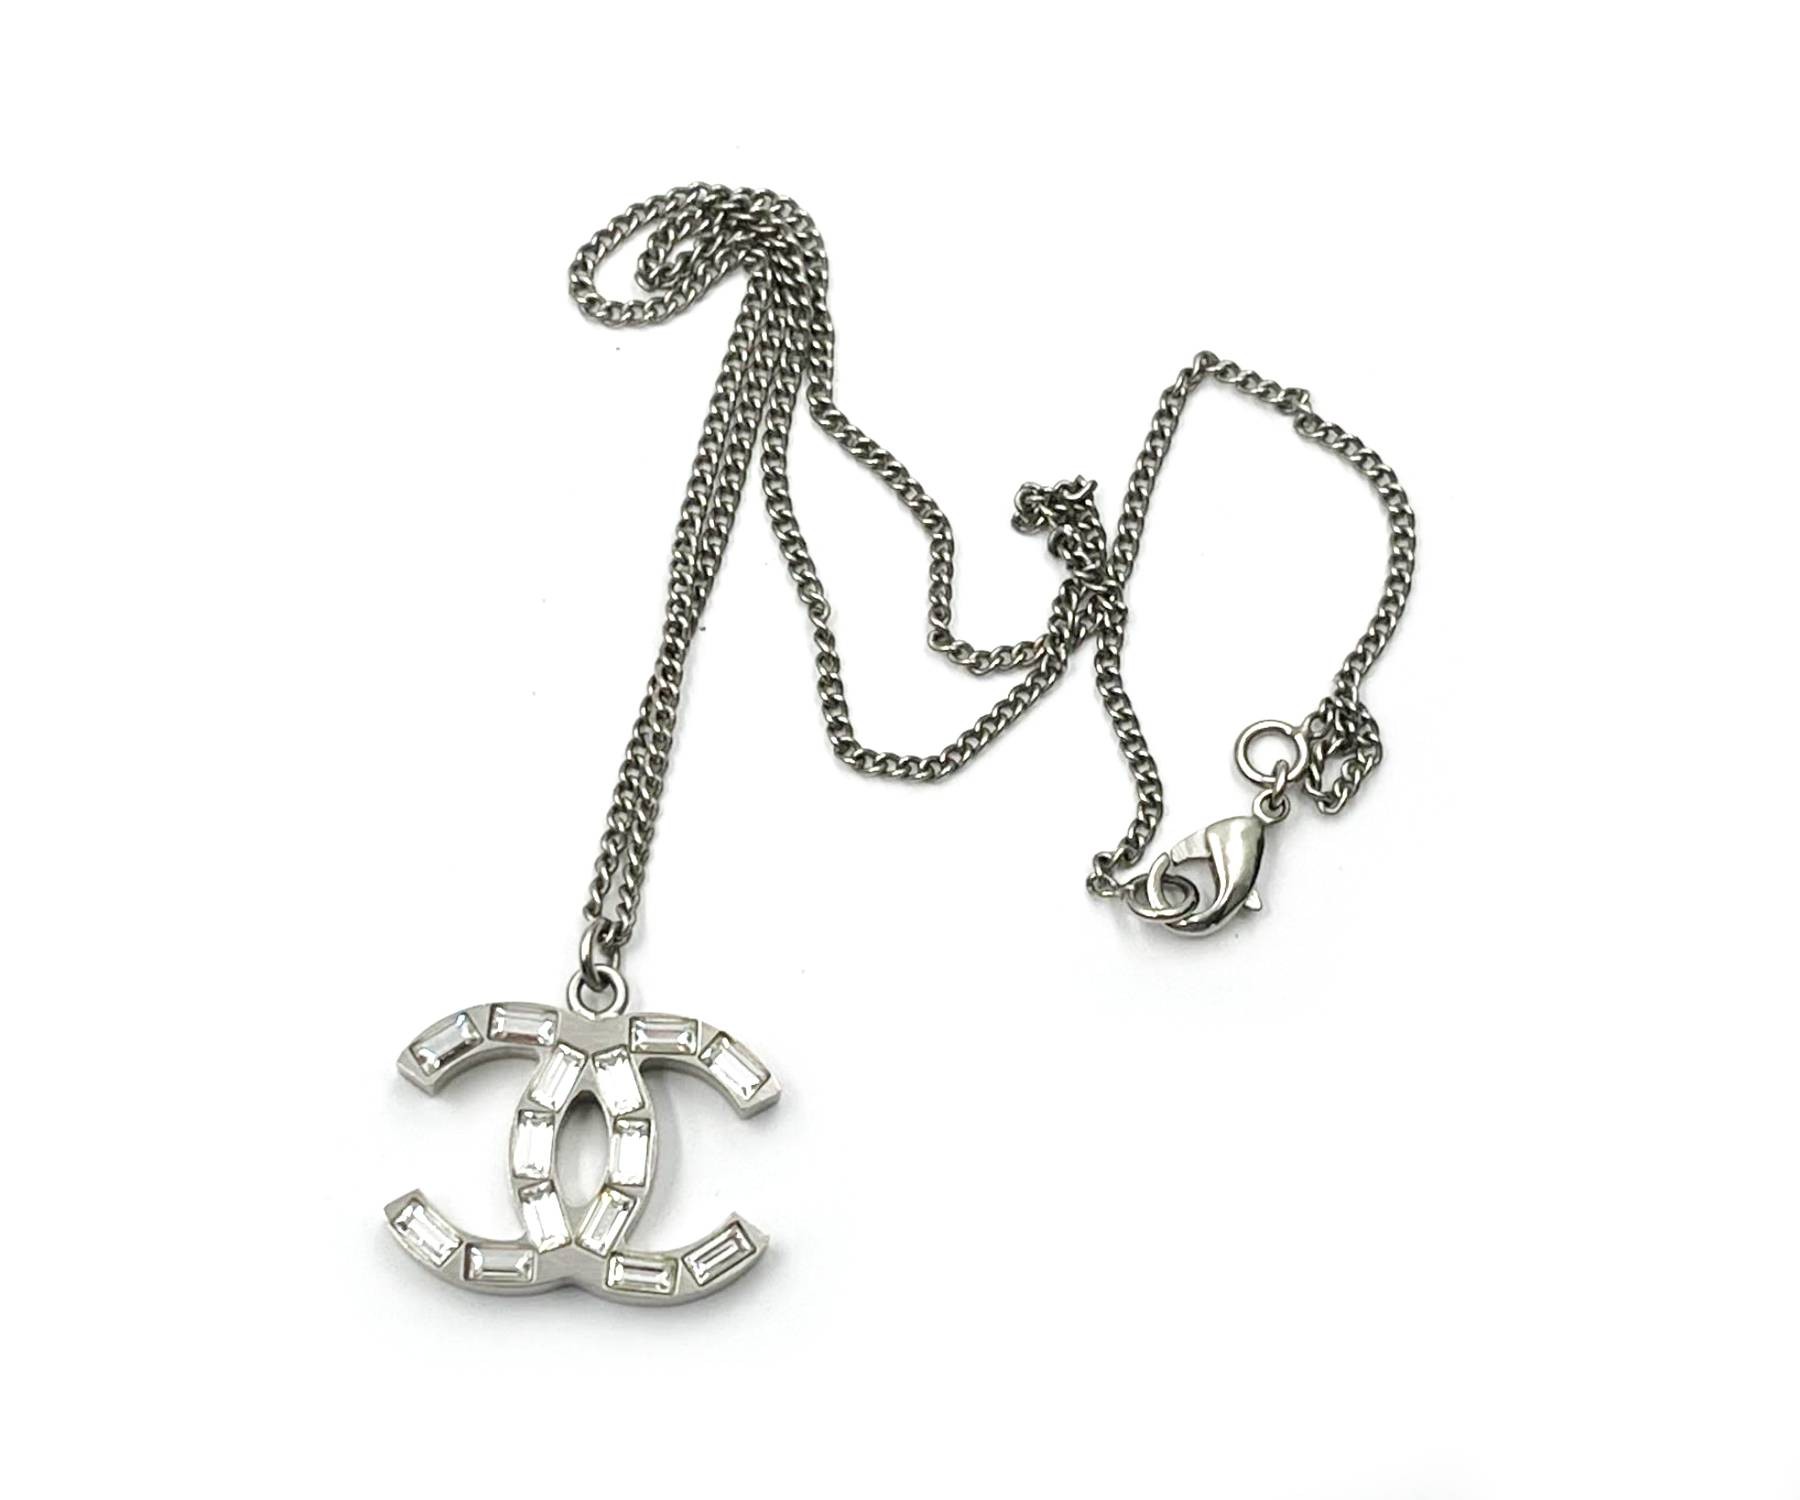 Chanel Necklace Multi Chain Silver CC Diamante Pendant